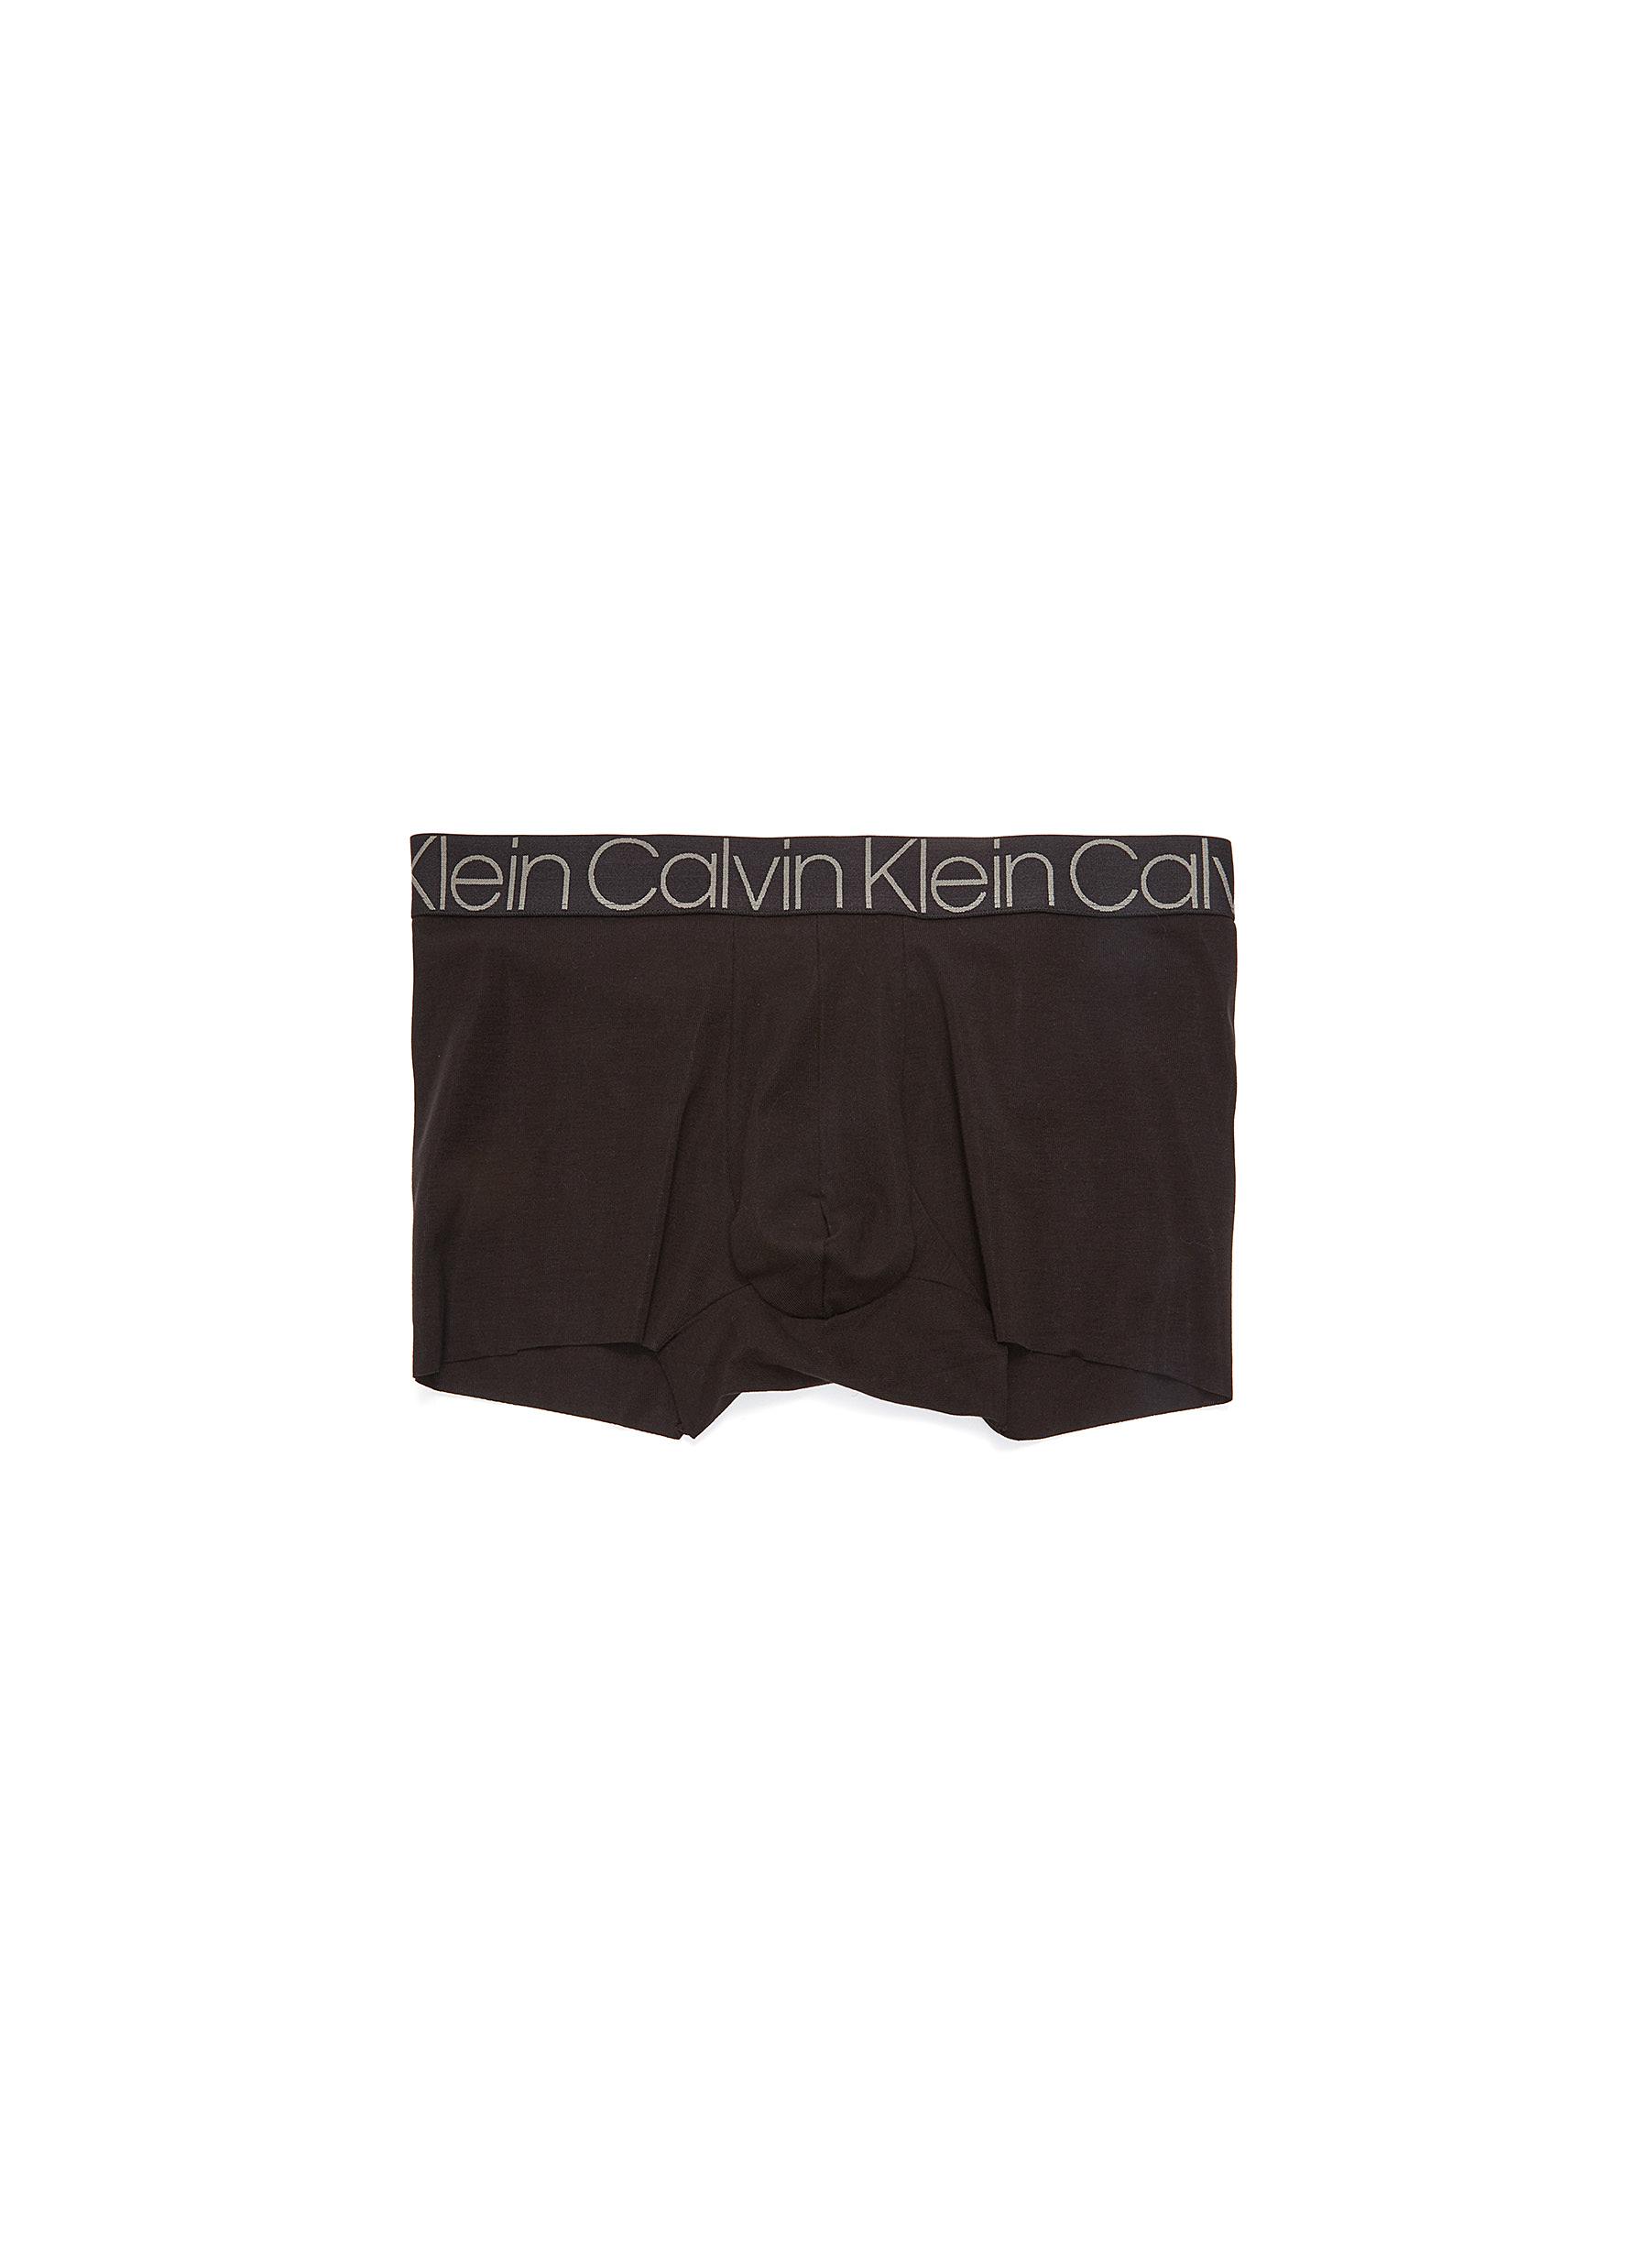 calvin klein style underwear